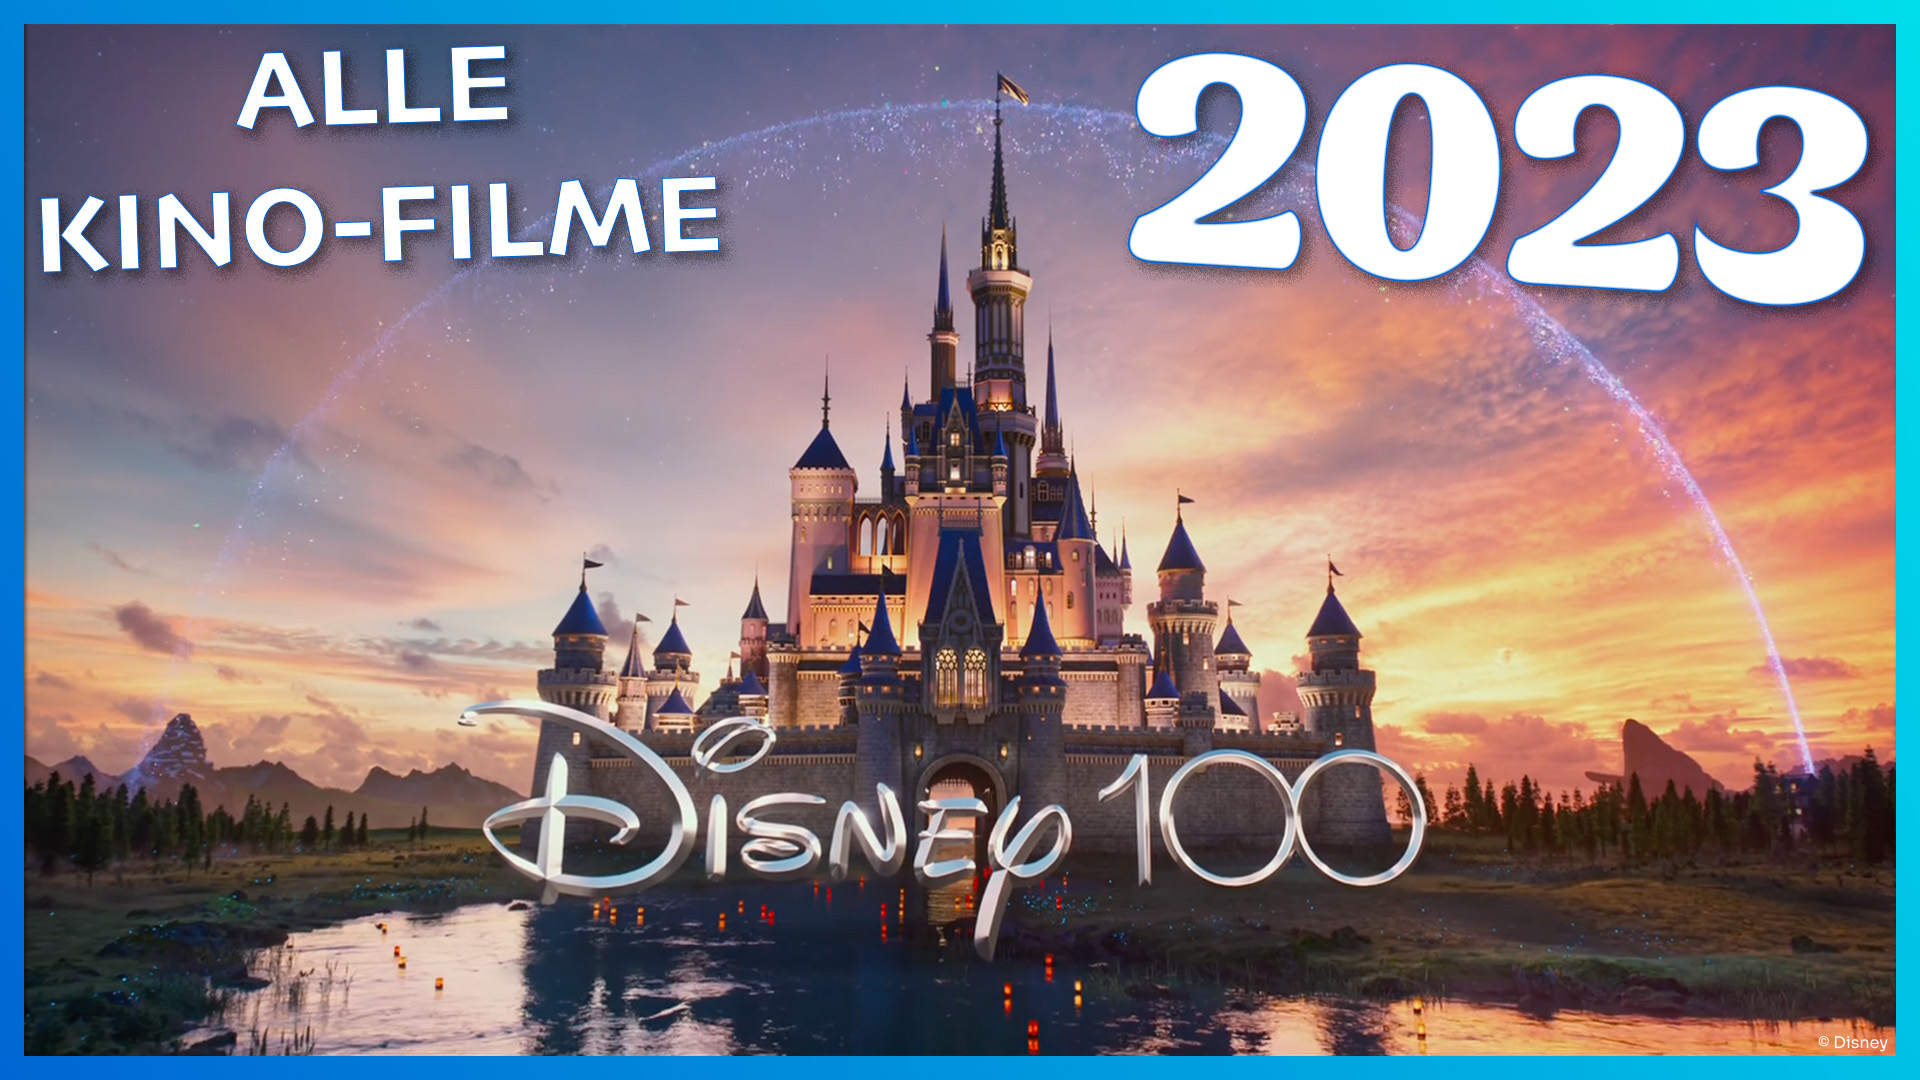 Alle Kino-Neustarts 2023 im Überblick: Diese Filme von Disney, Pixar,  Marvel, Lucasfilm, 20th Century und Searchlight erwarten euch! |  DisneyCentral.de – dein Disney Fan Portal